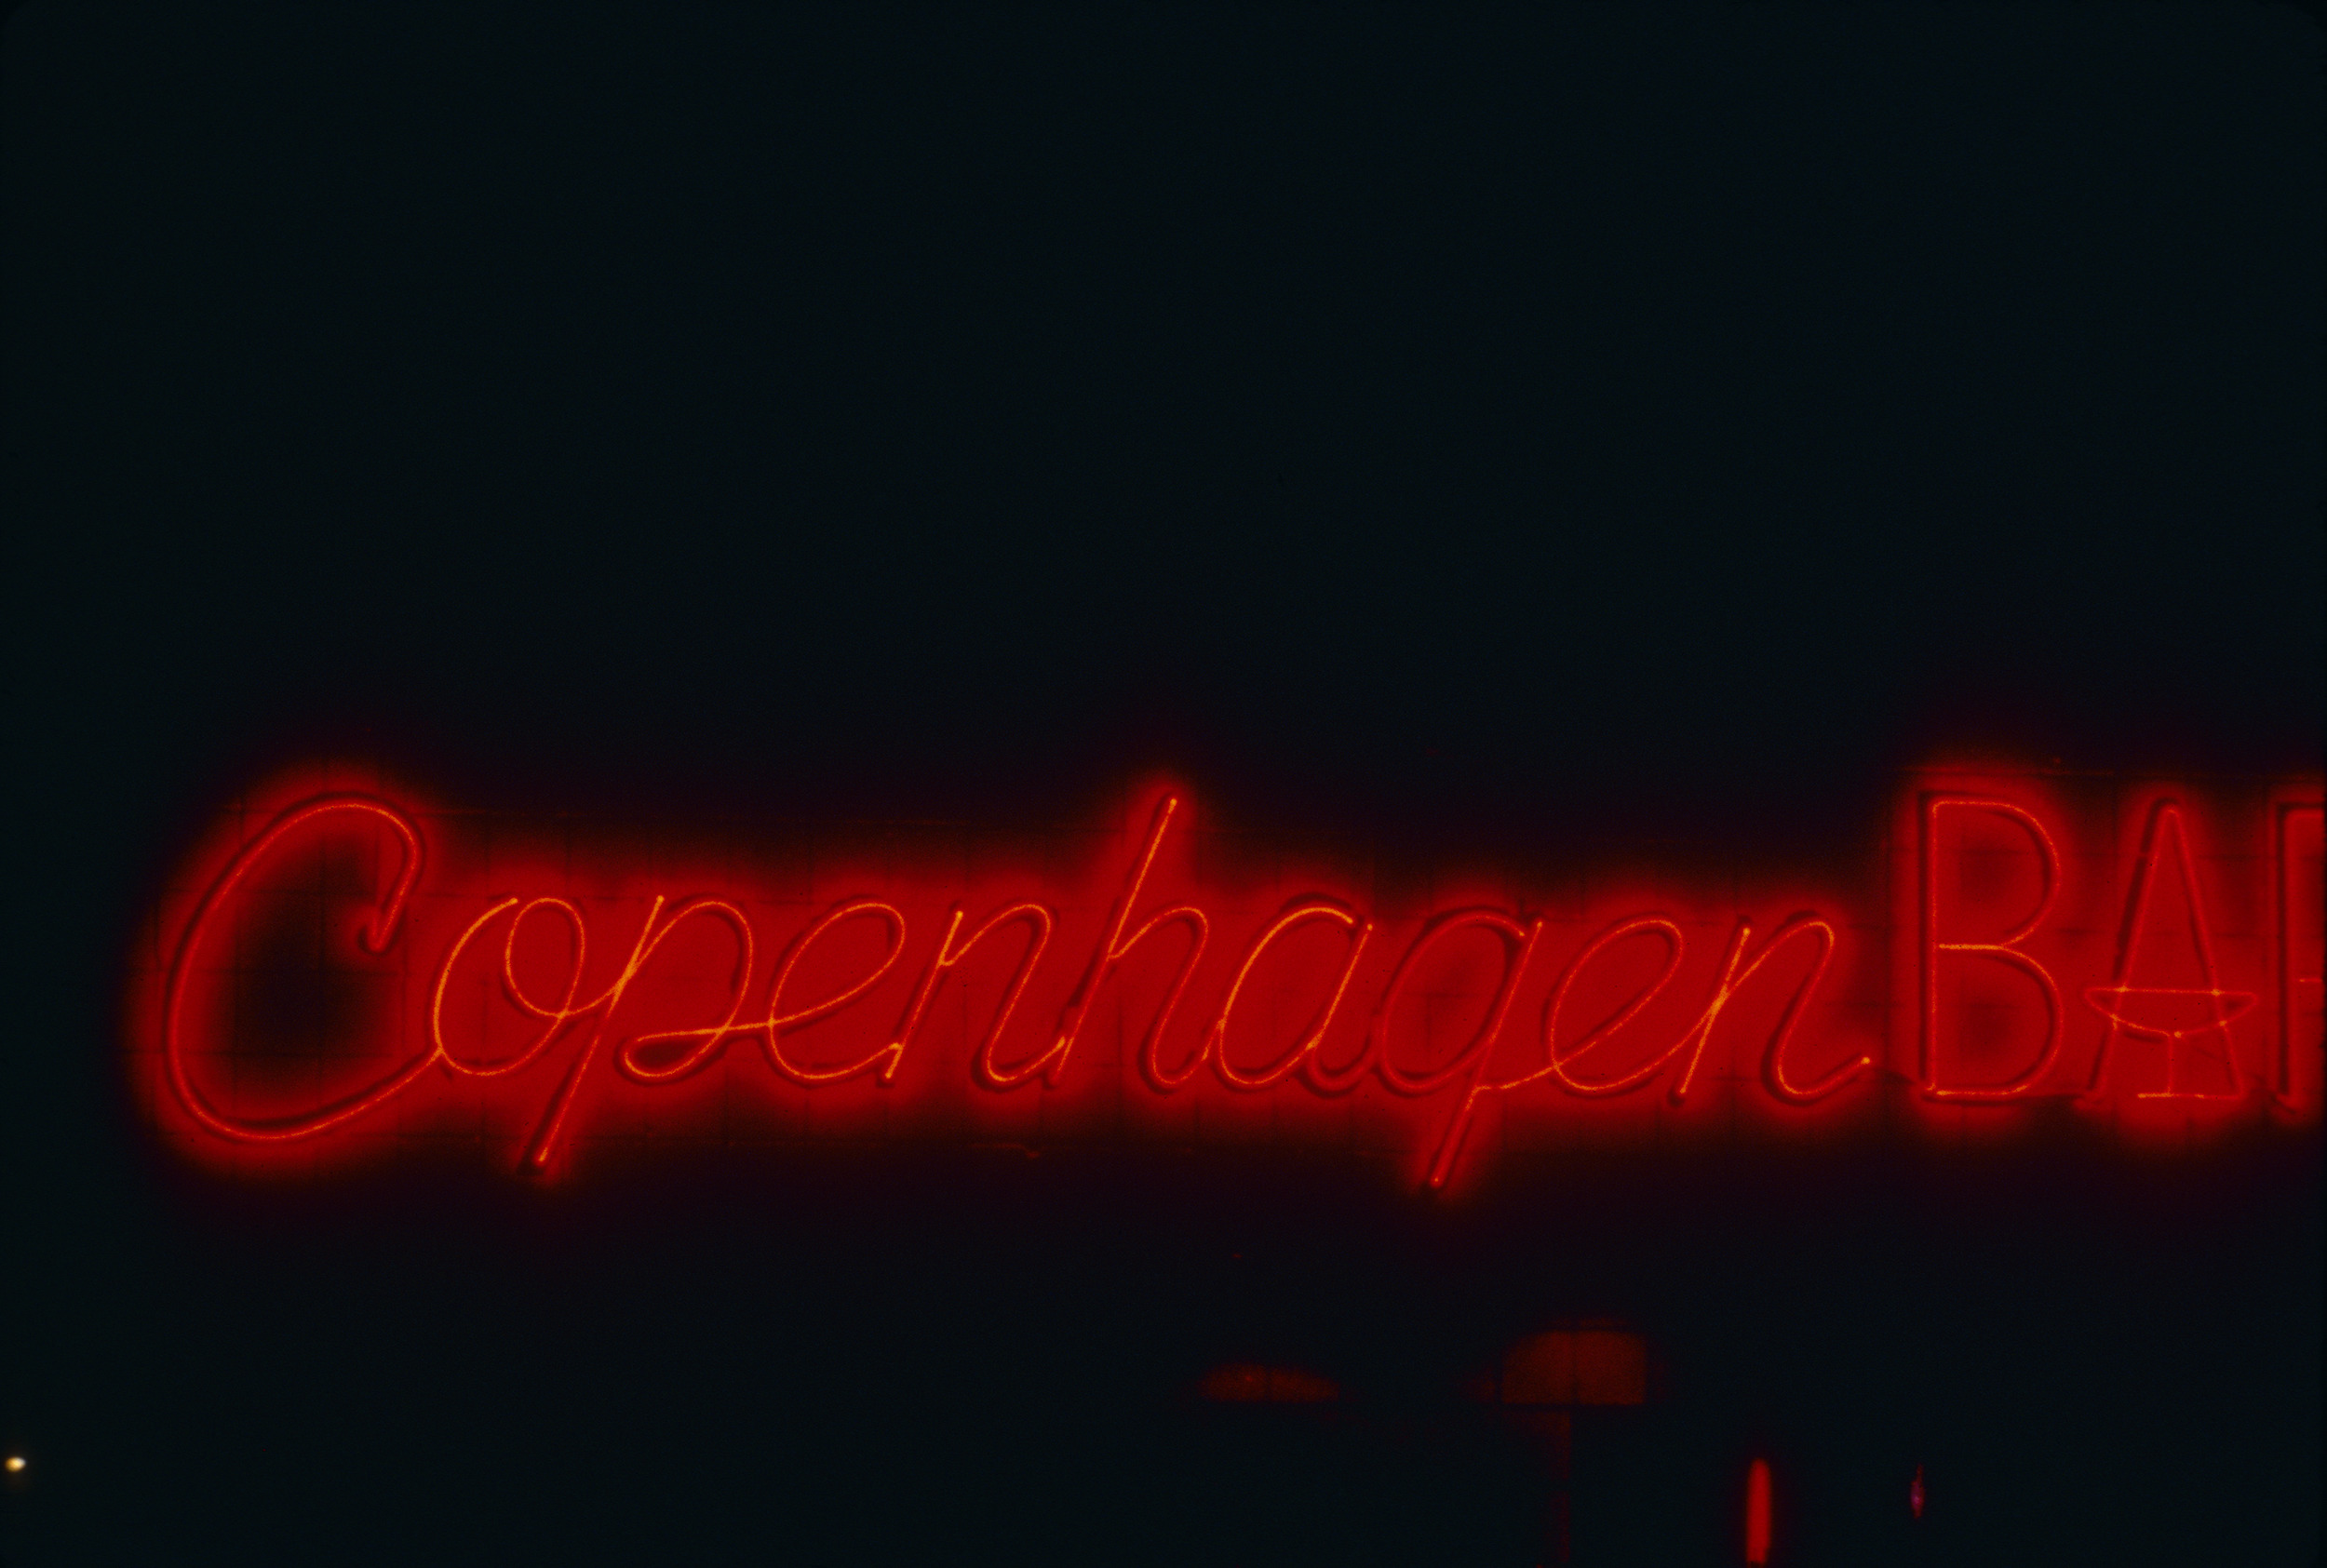 Slide of the neon sign for the Copenhagen Bar, Sparks, Nevada, 1986